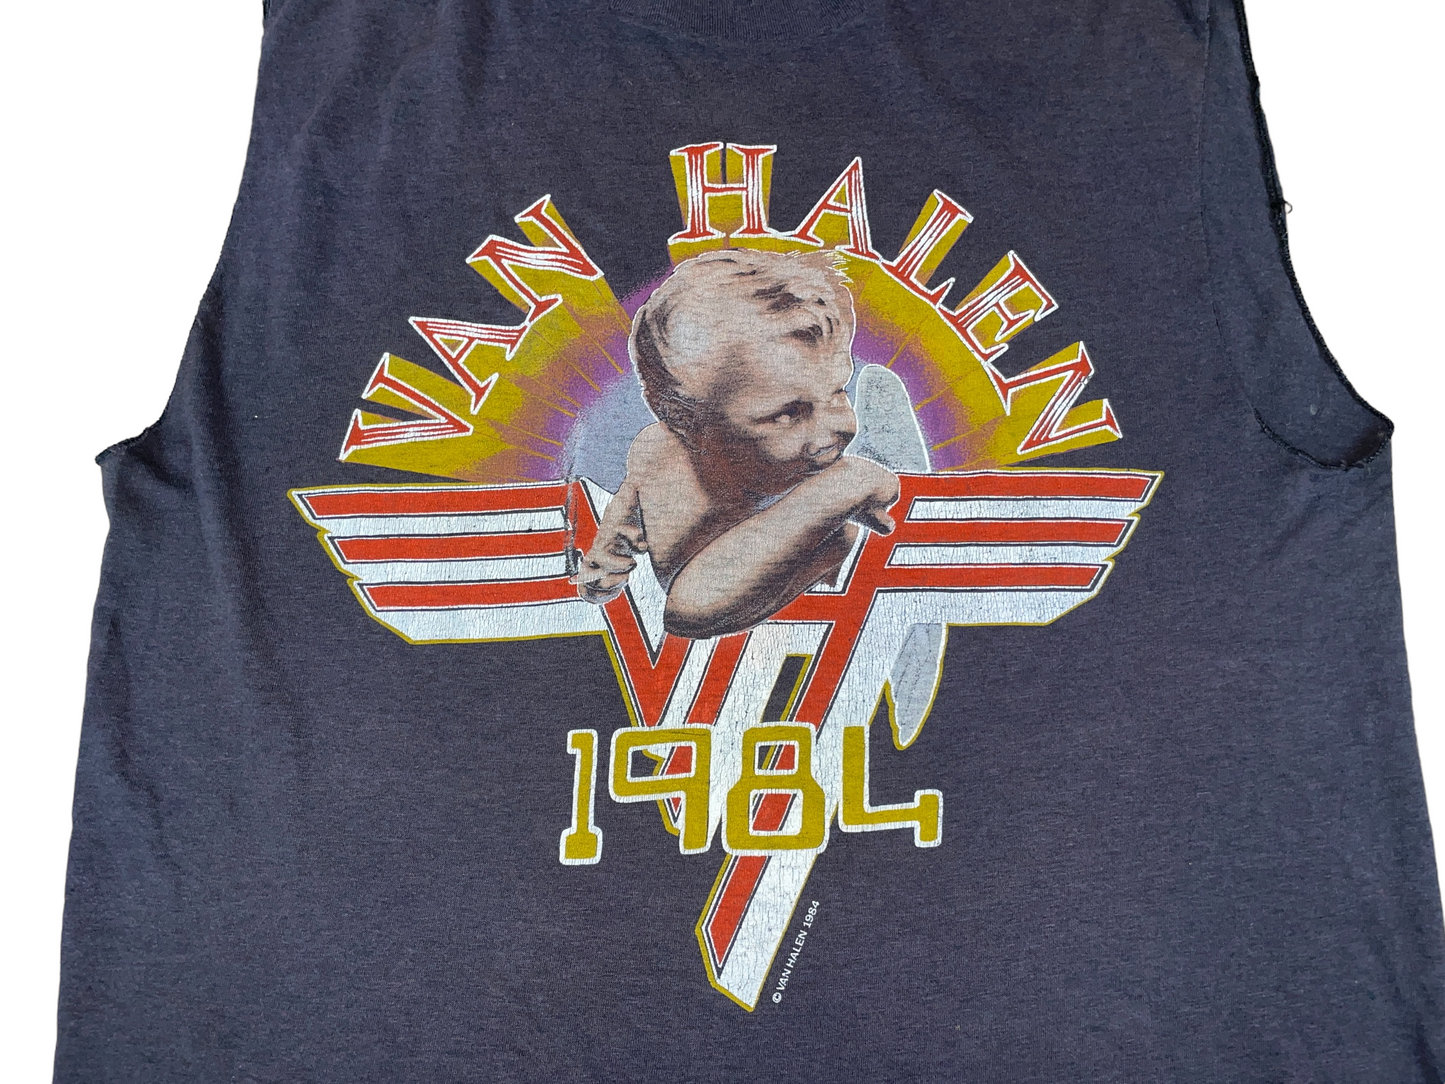 Vintage 1984 Van Halen Tour T-Shirt